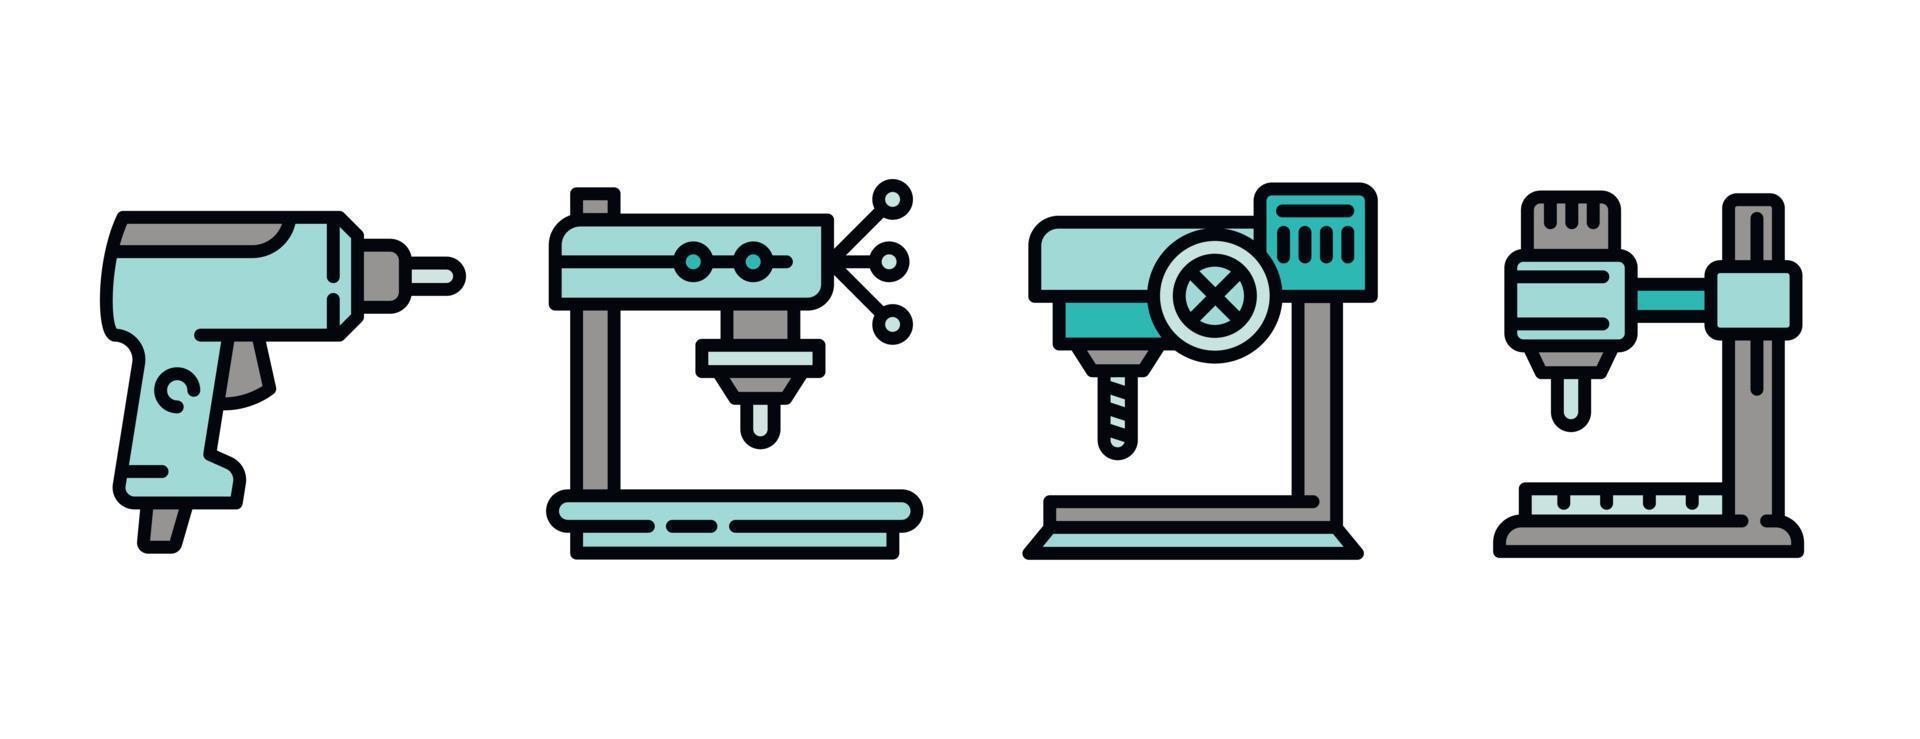 conjunto de iconos de máquina perforadora, estilo de esquema vector